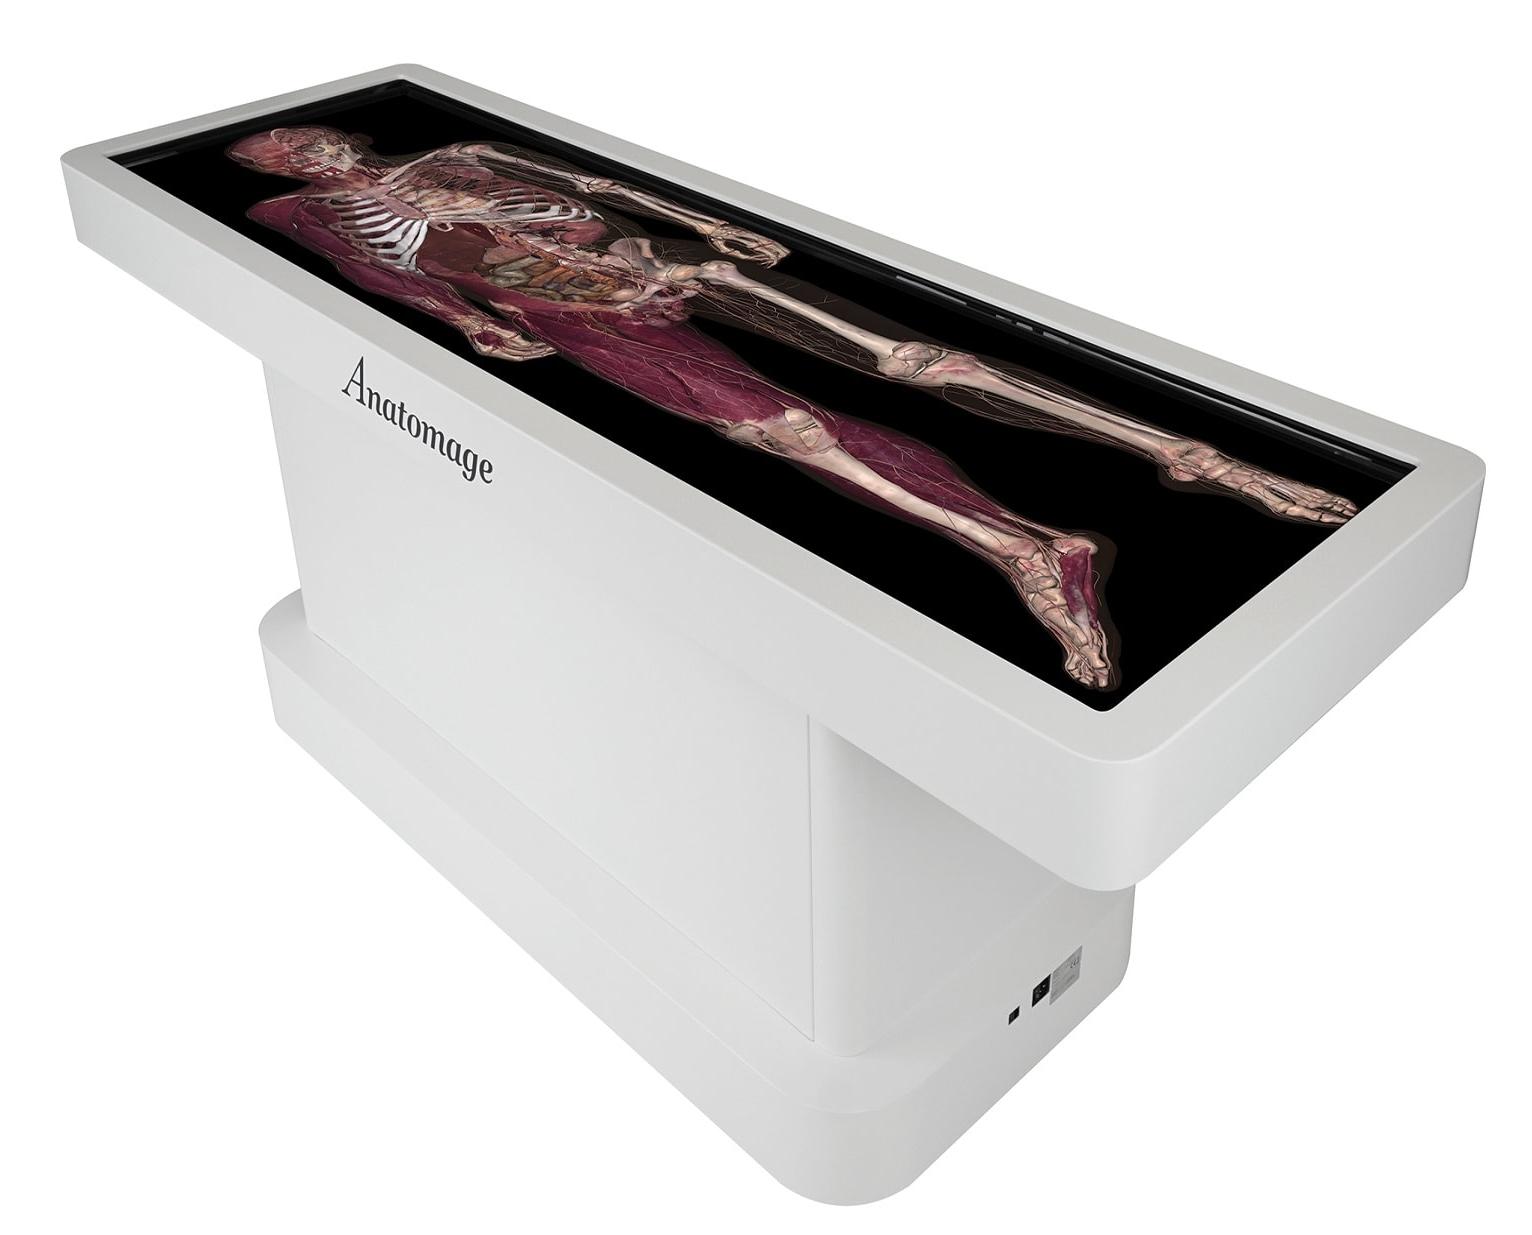 Anatomage Table - виртуальный интерактивный анатомический стол (Анатомаж)